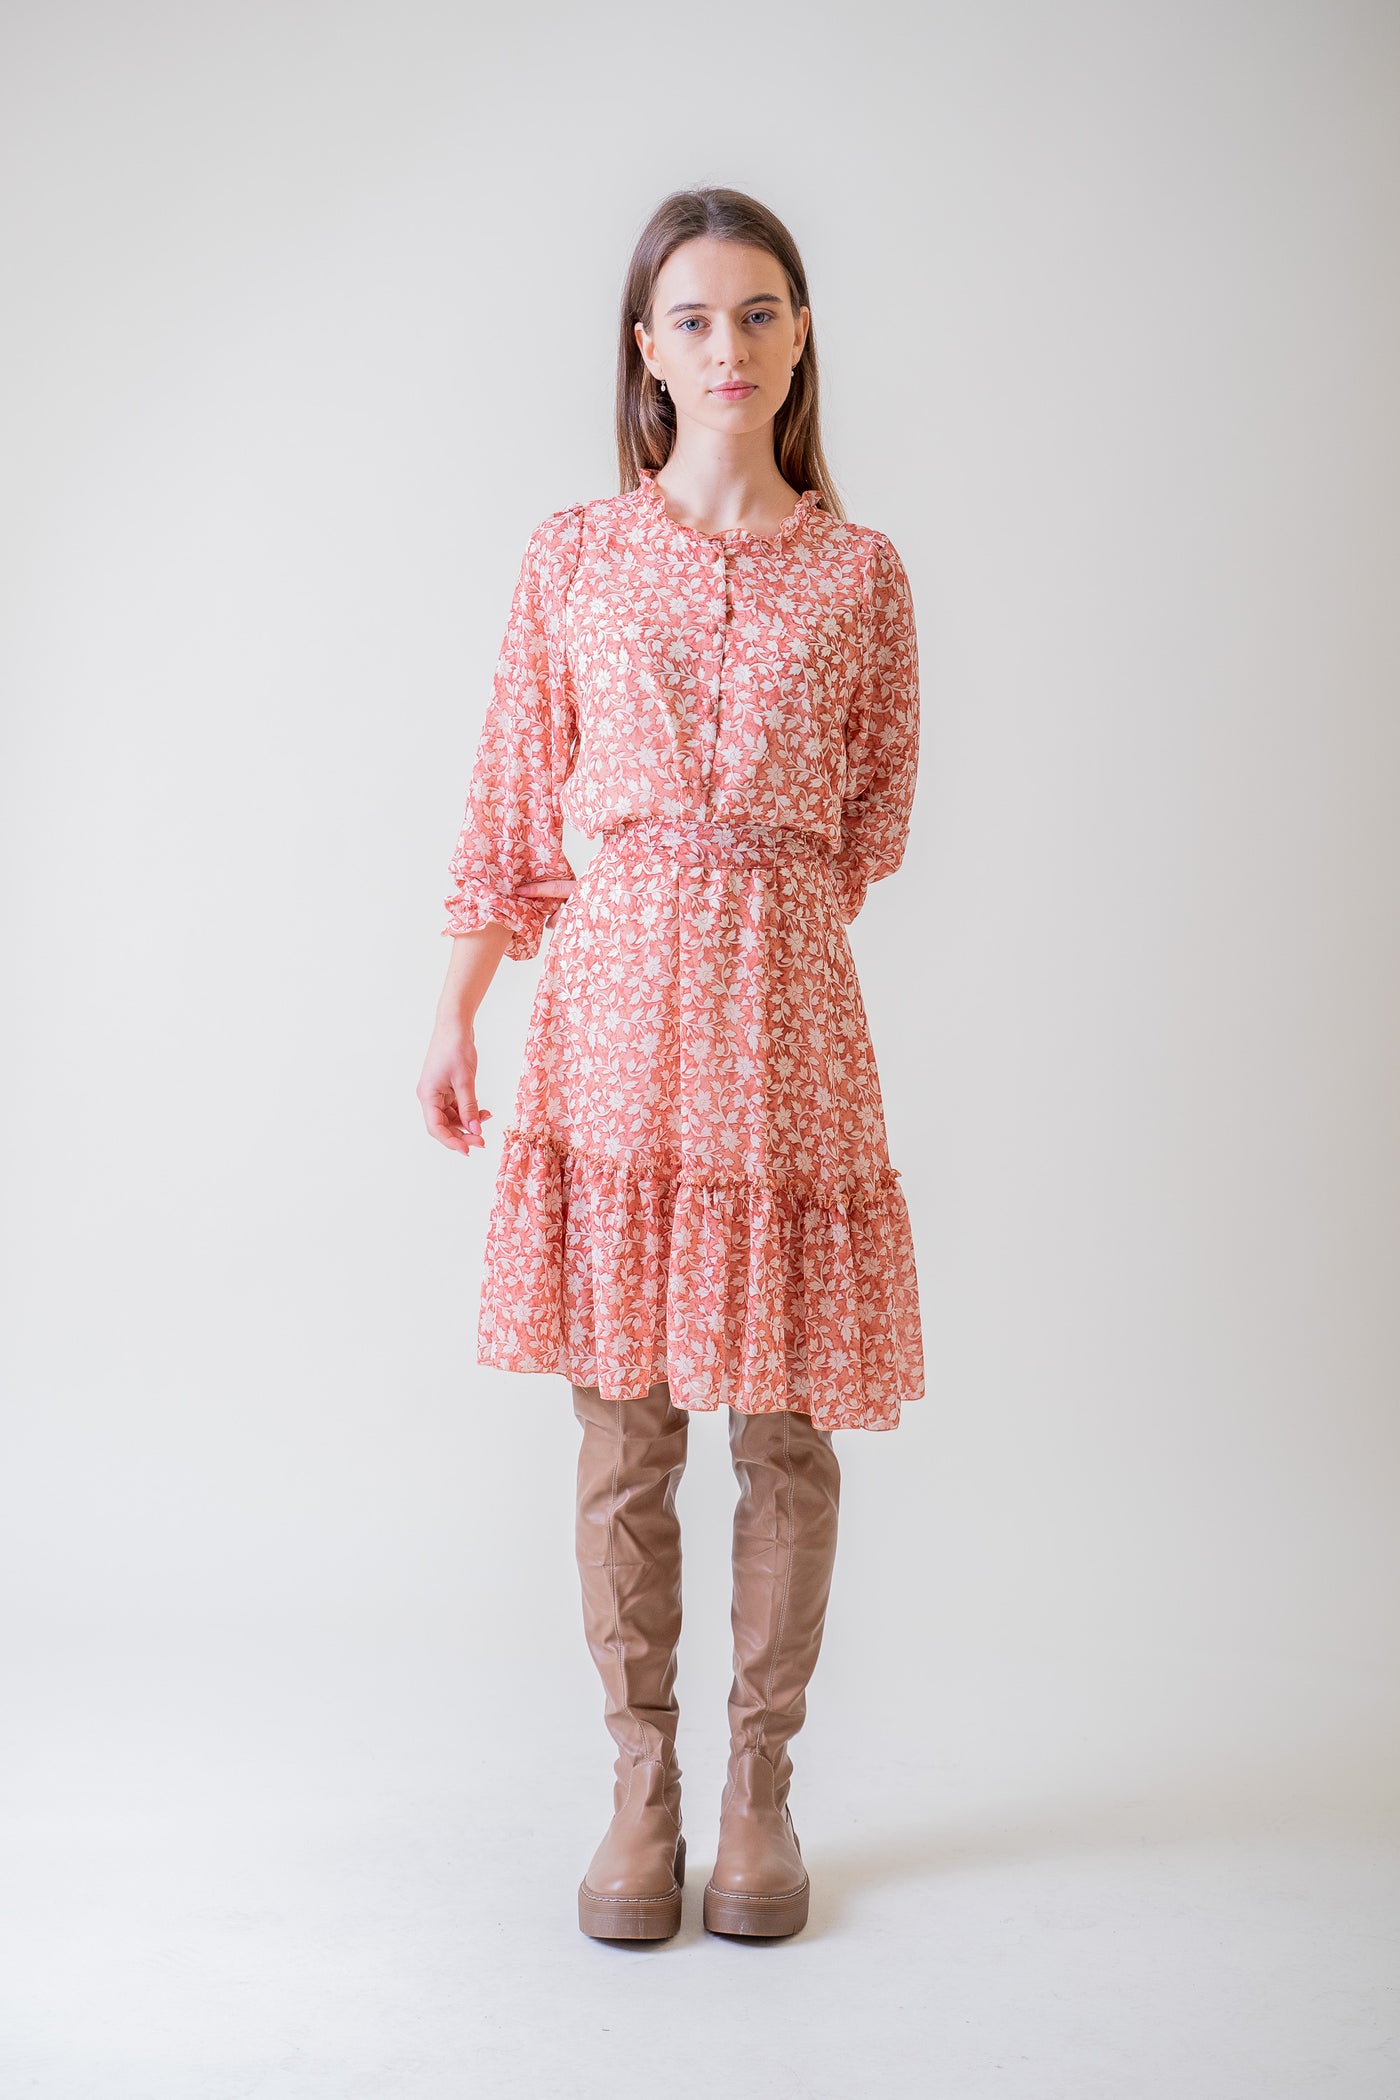 Ružové šaty s malou potlačou - Šaty